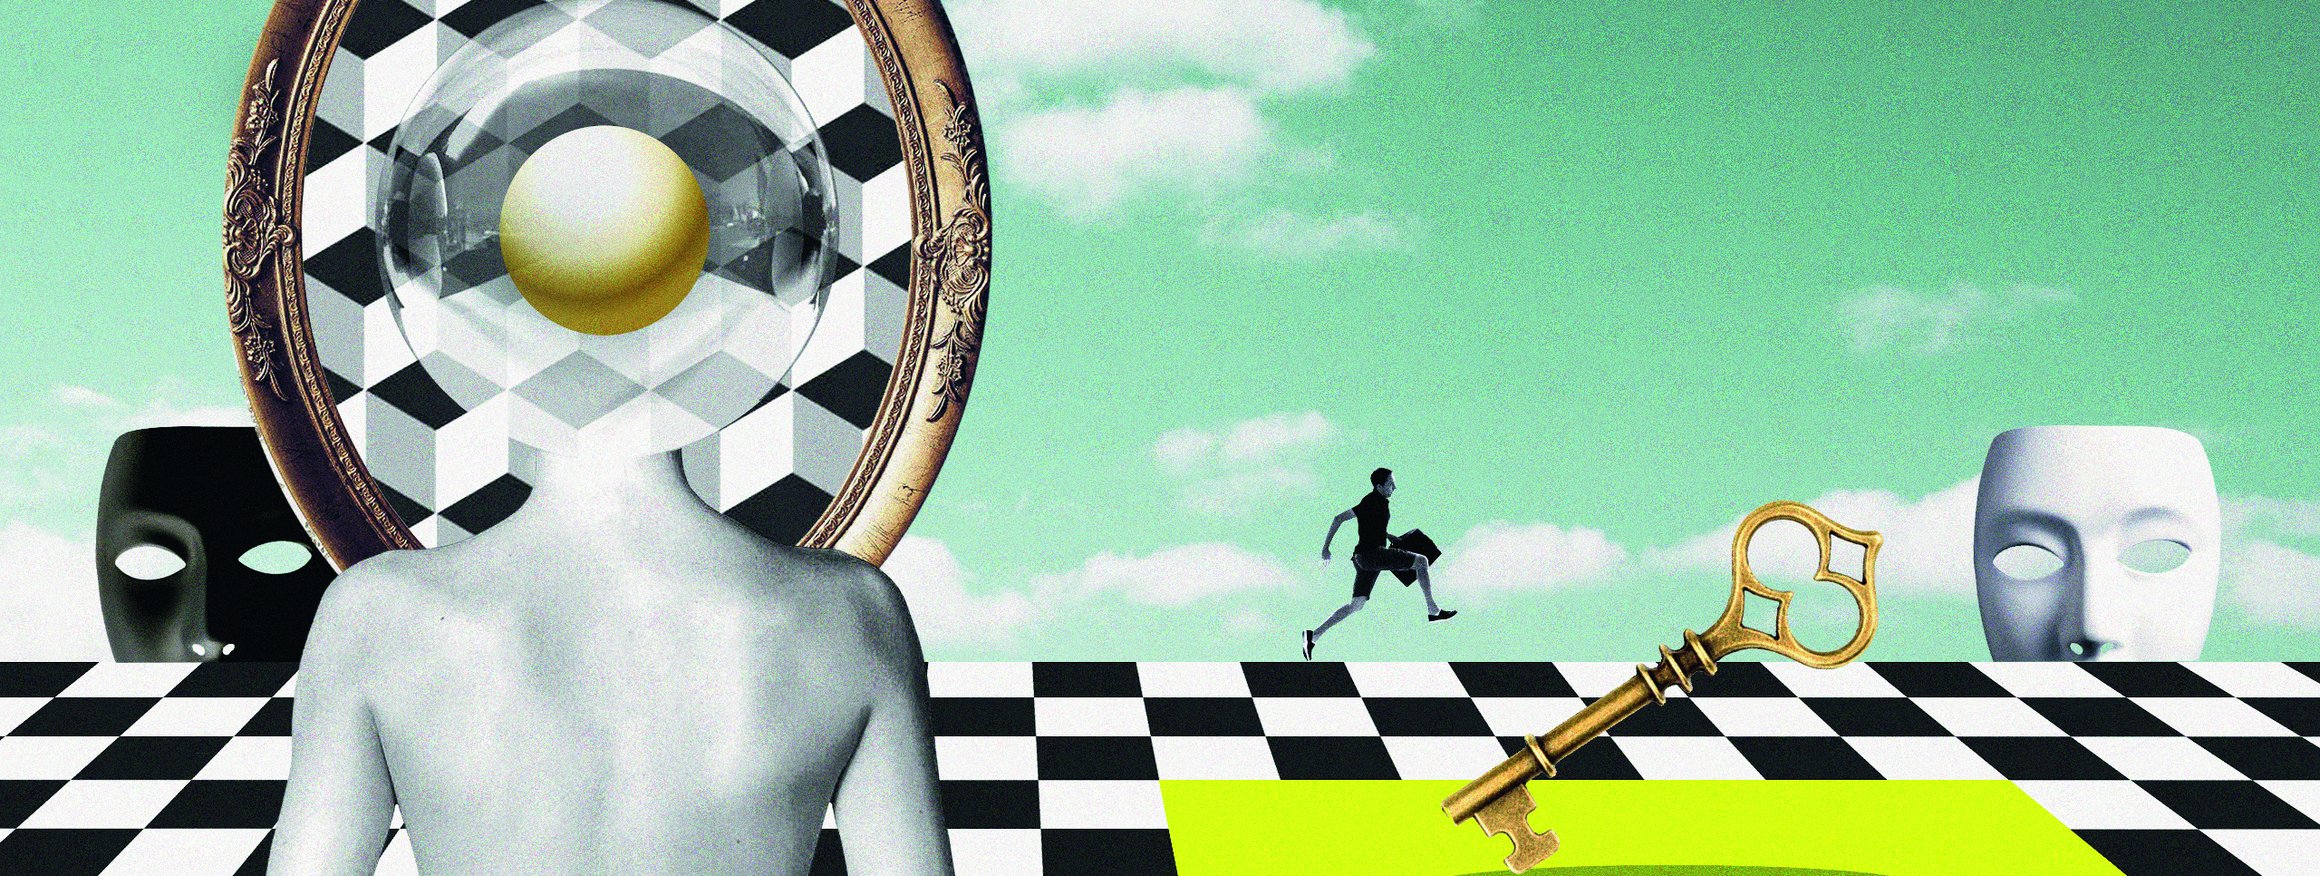 Die Illustration zeigt eine surrealistische Umgebung. Ein Körper ist von hinten zu sehen, dessen Kopf eine Luftblase zeigt, die sich in einem Spiegel verliert. Auf dem Schachbrett im Hintergrund springt ein Mensch, zwei Masken erscheinen am Rand.